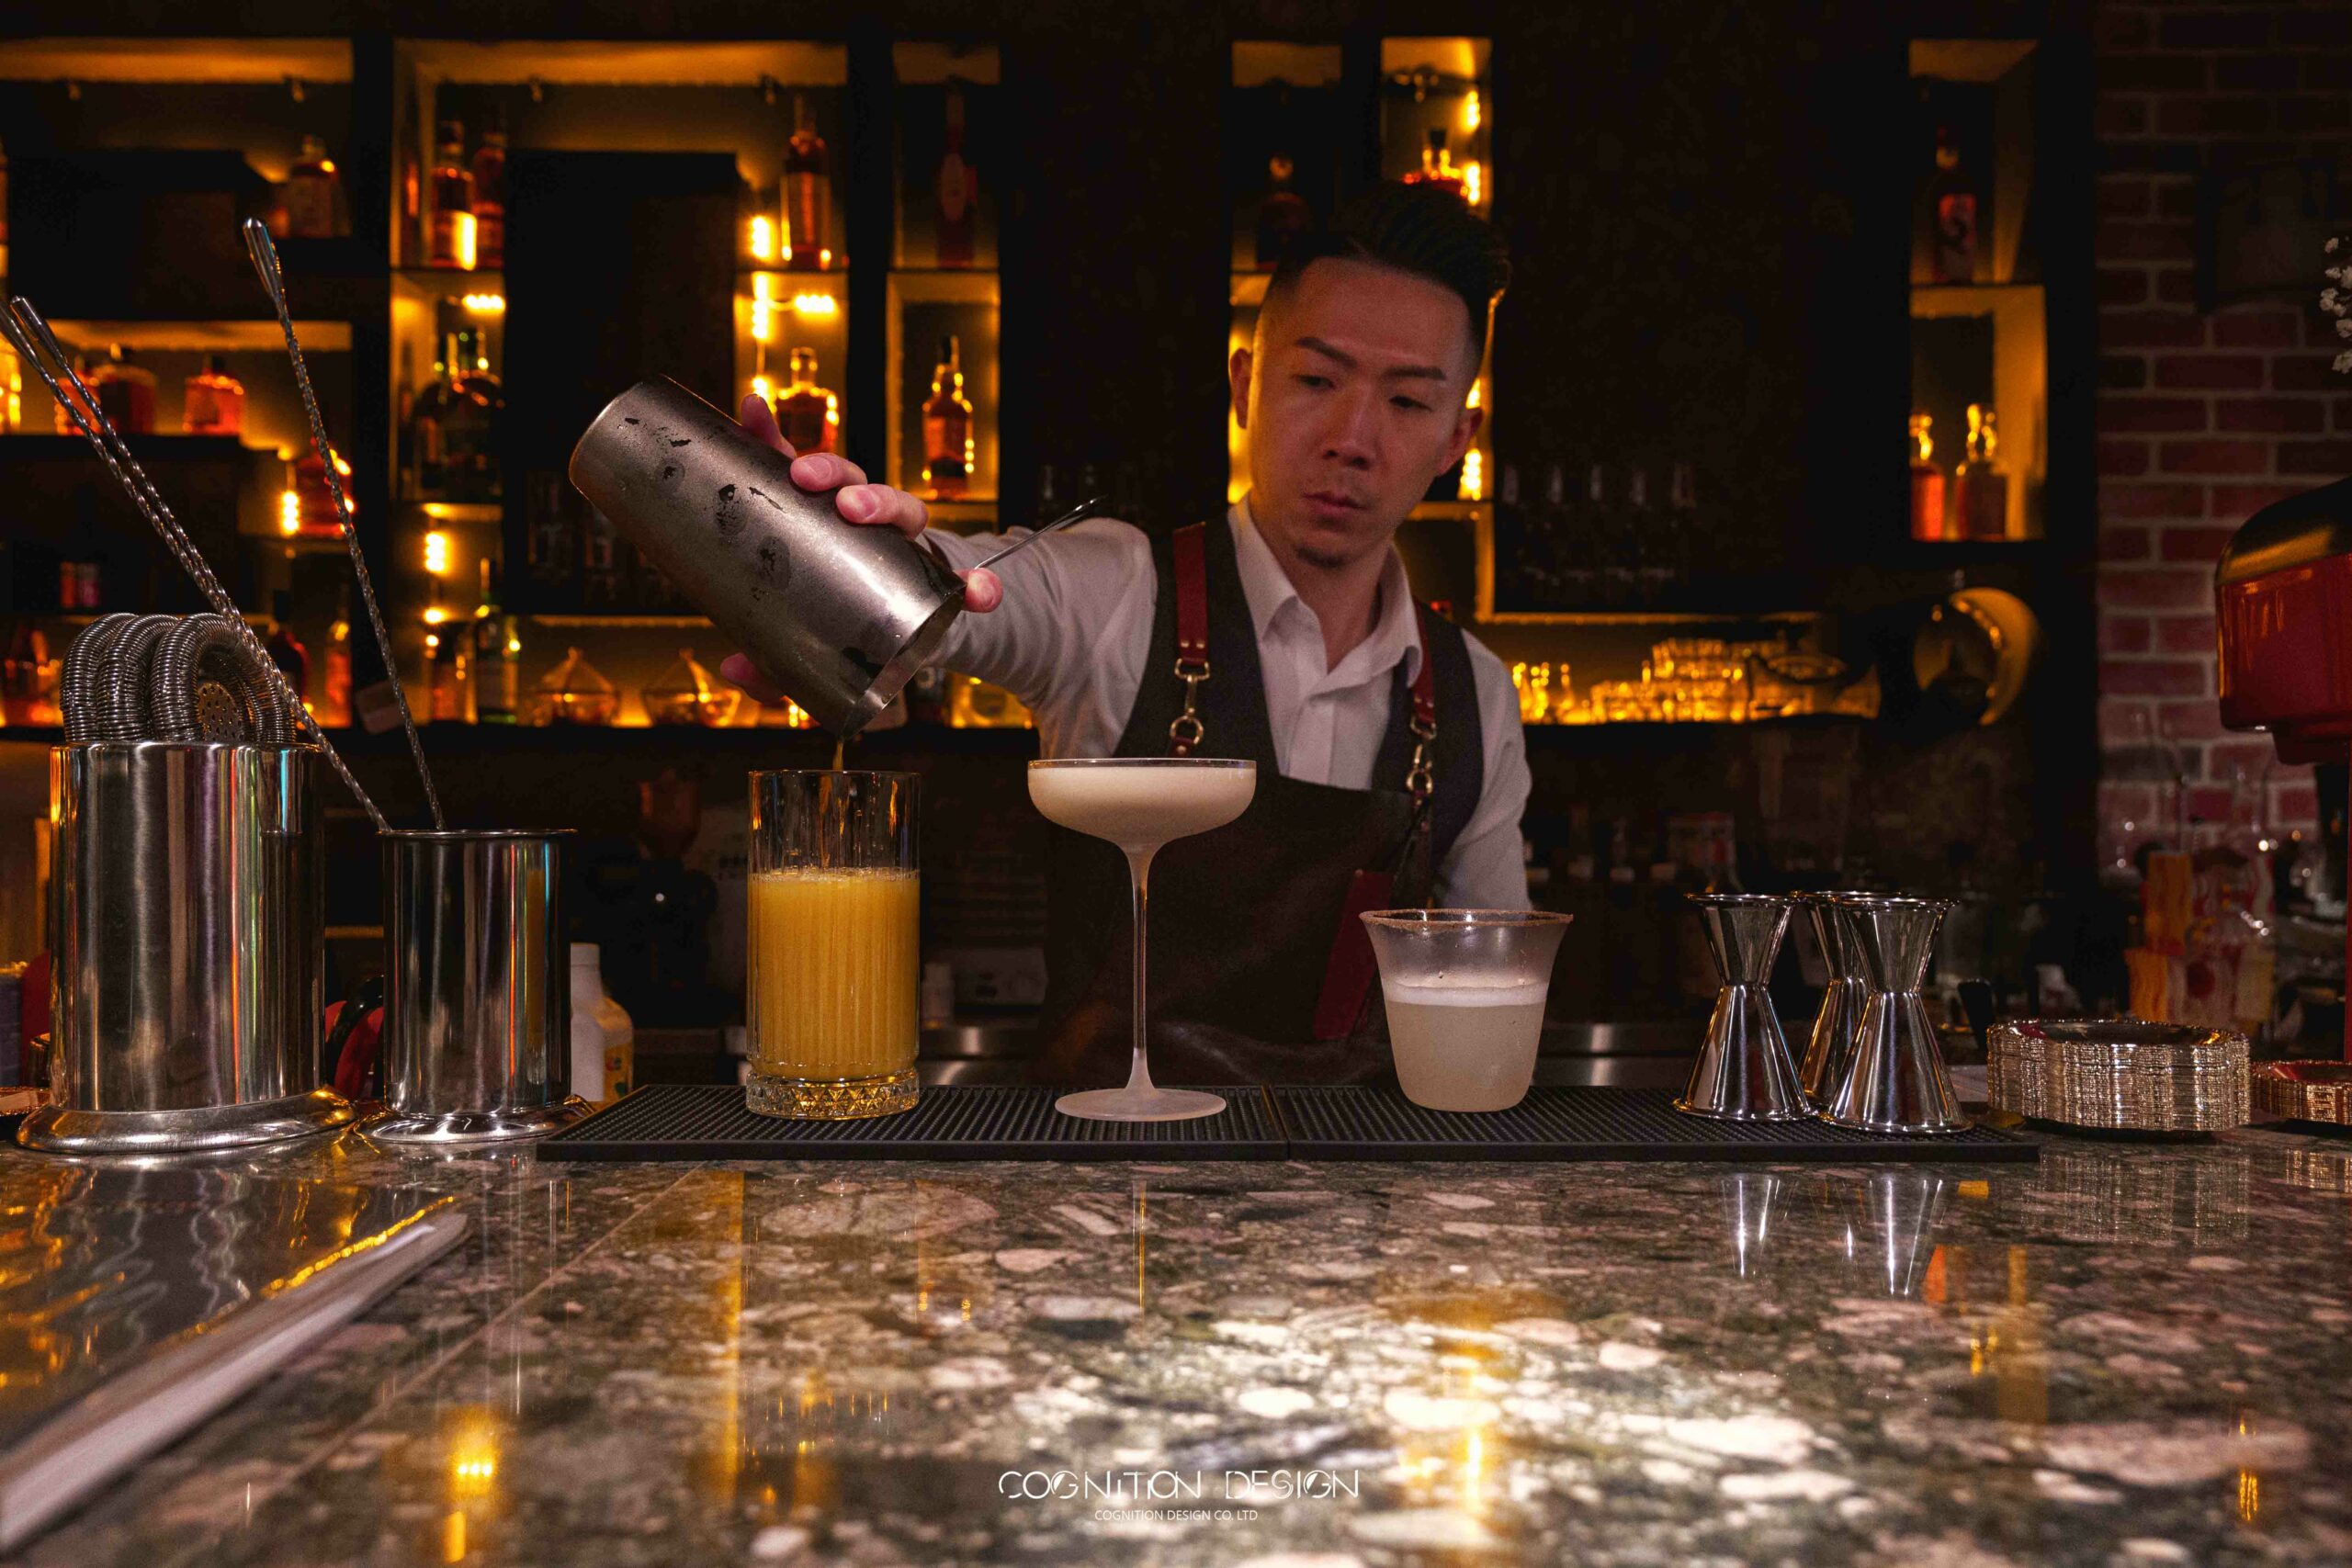 酒吧設計中調酒師與出餐酒吧櫃台銜接，顧客可以直接觀看整個調酒製程